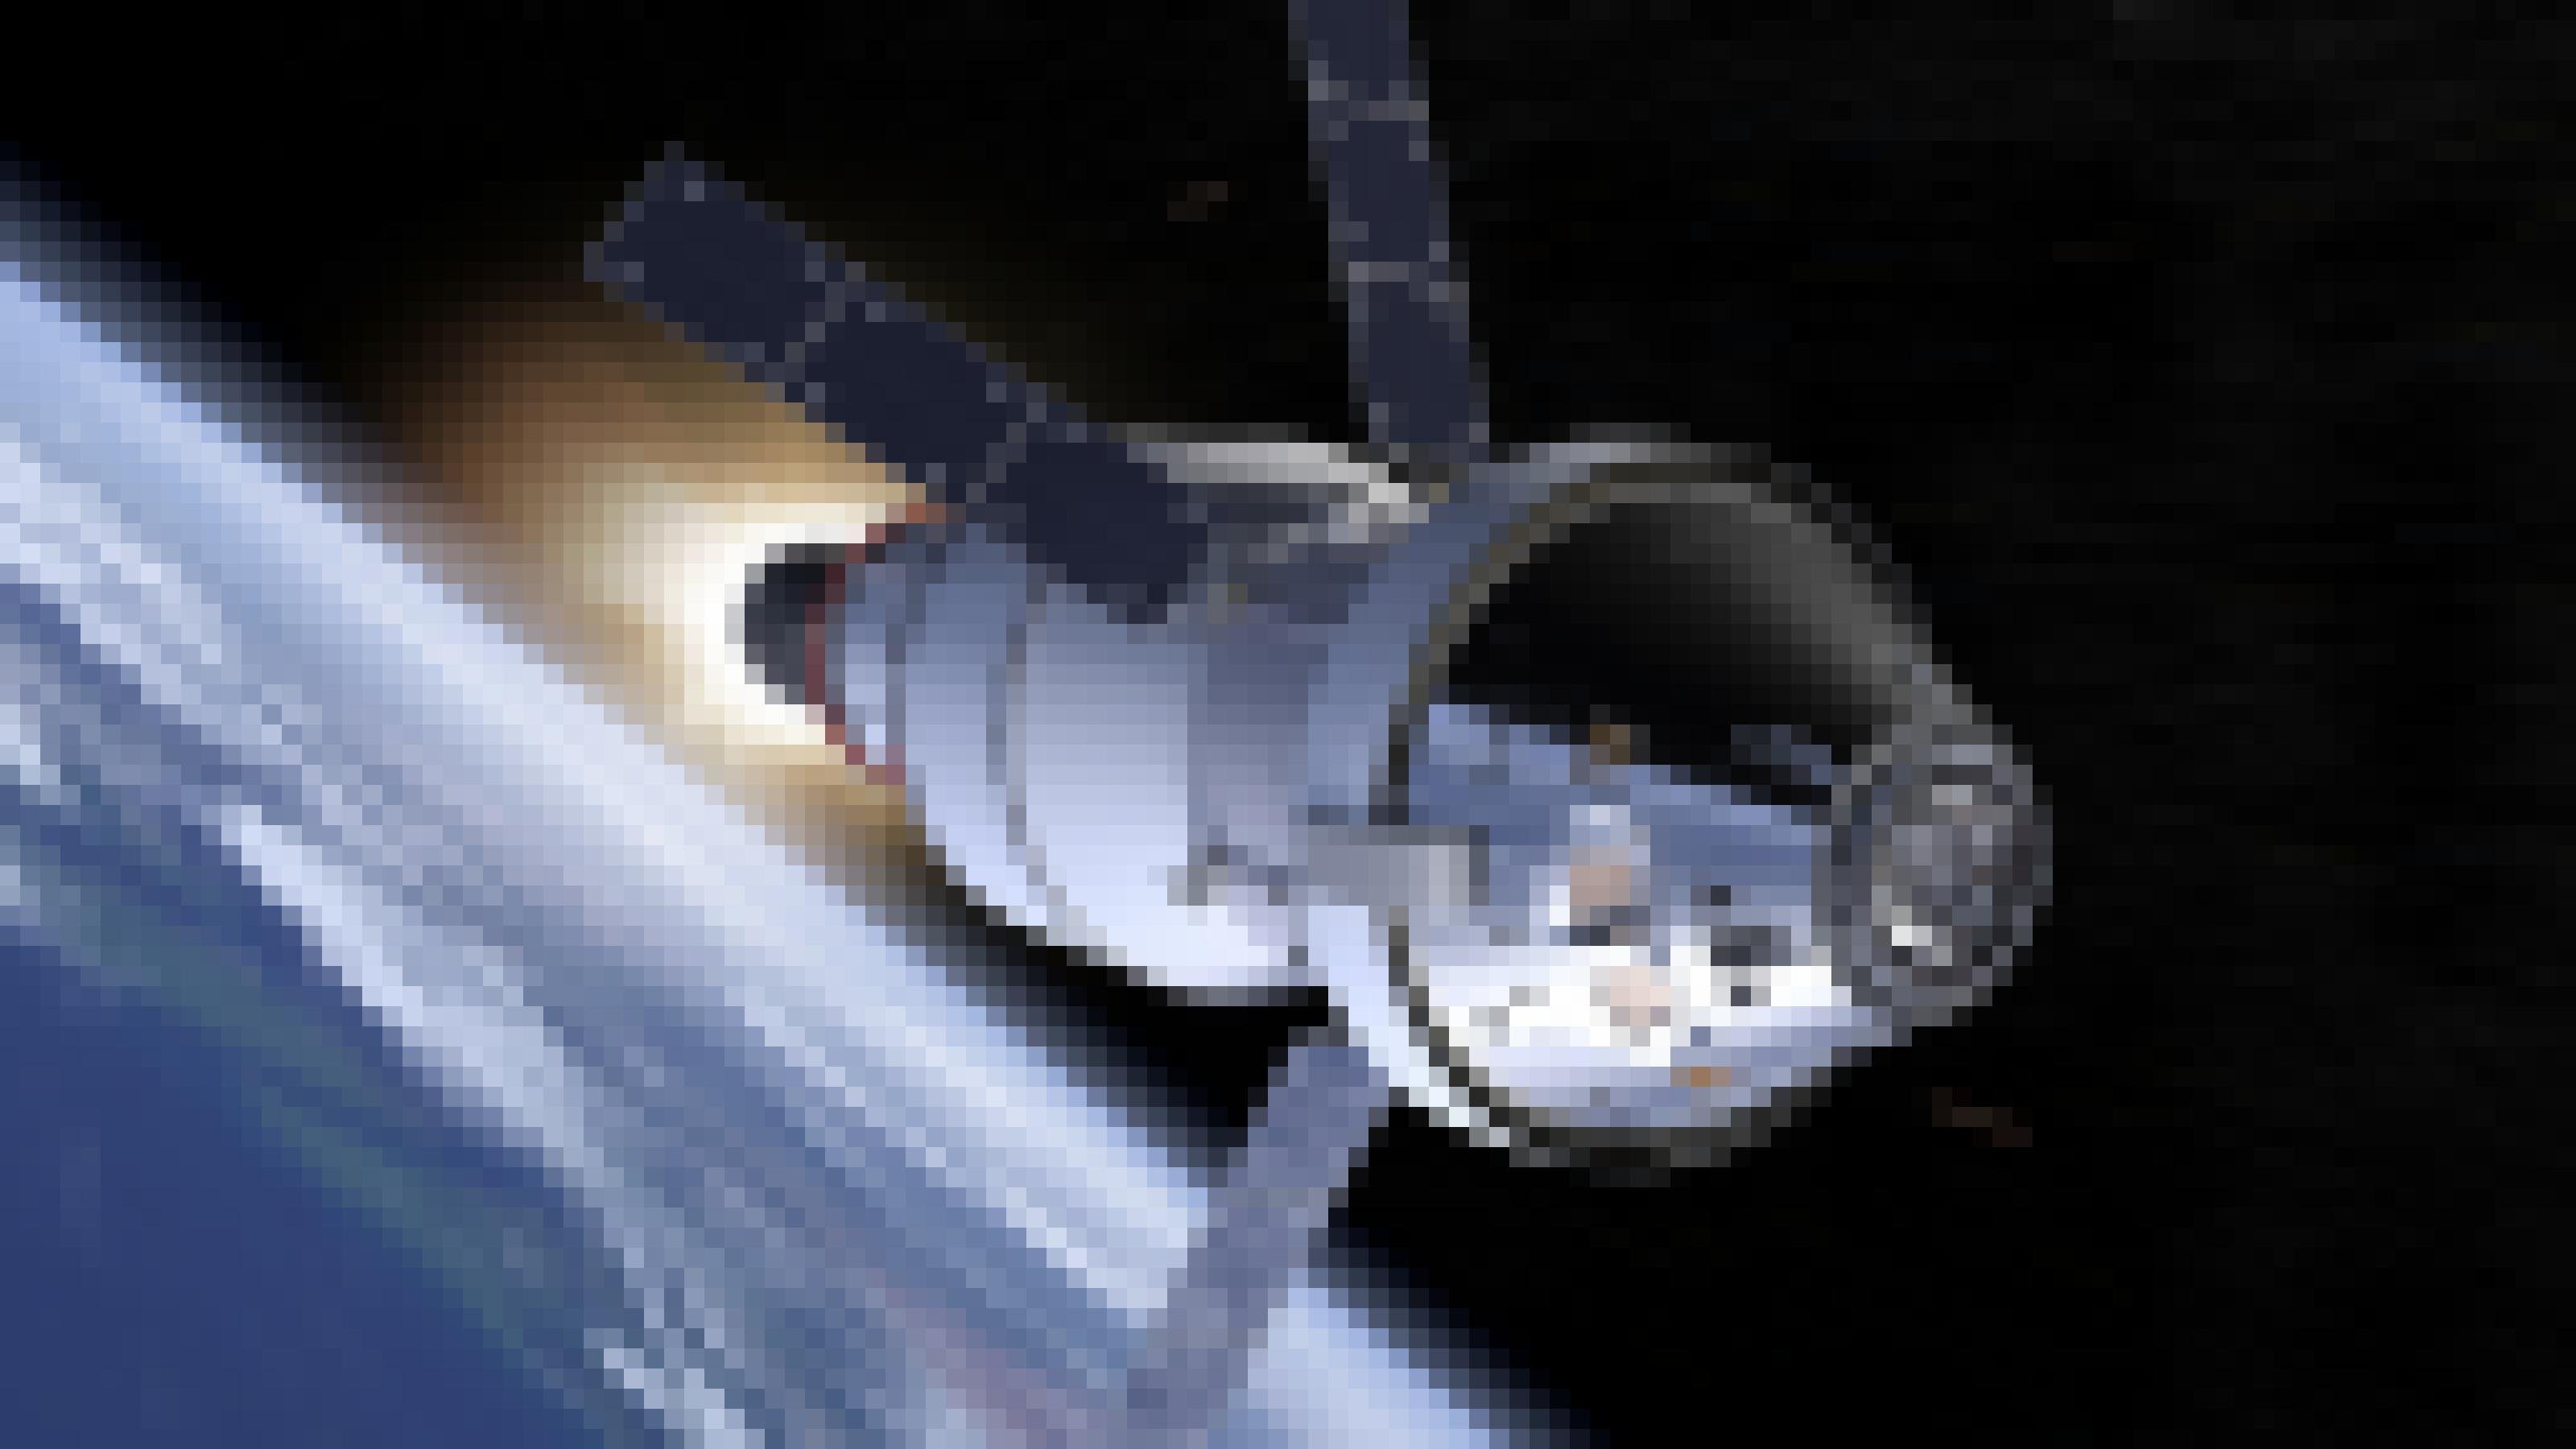 Eine künstlerische Darstellung des Orion-Raumschiffs, das die Erde verlassen hat und sich bereits im Weltraum befindet.